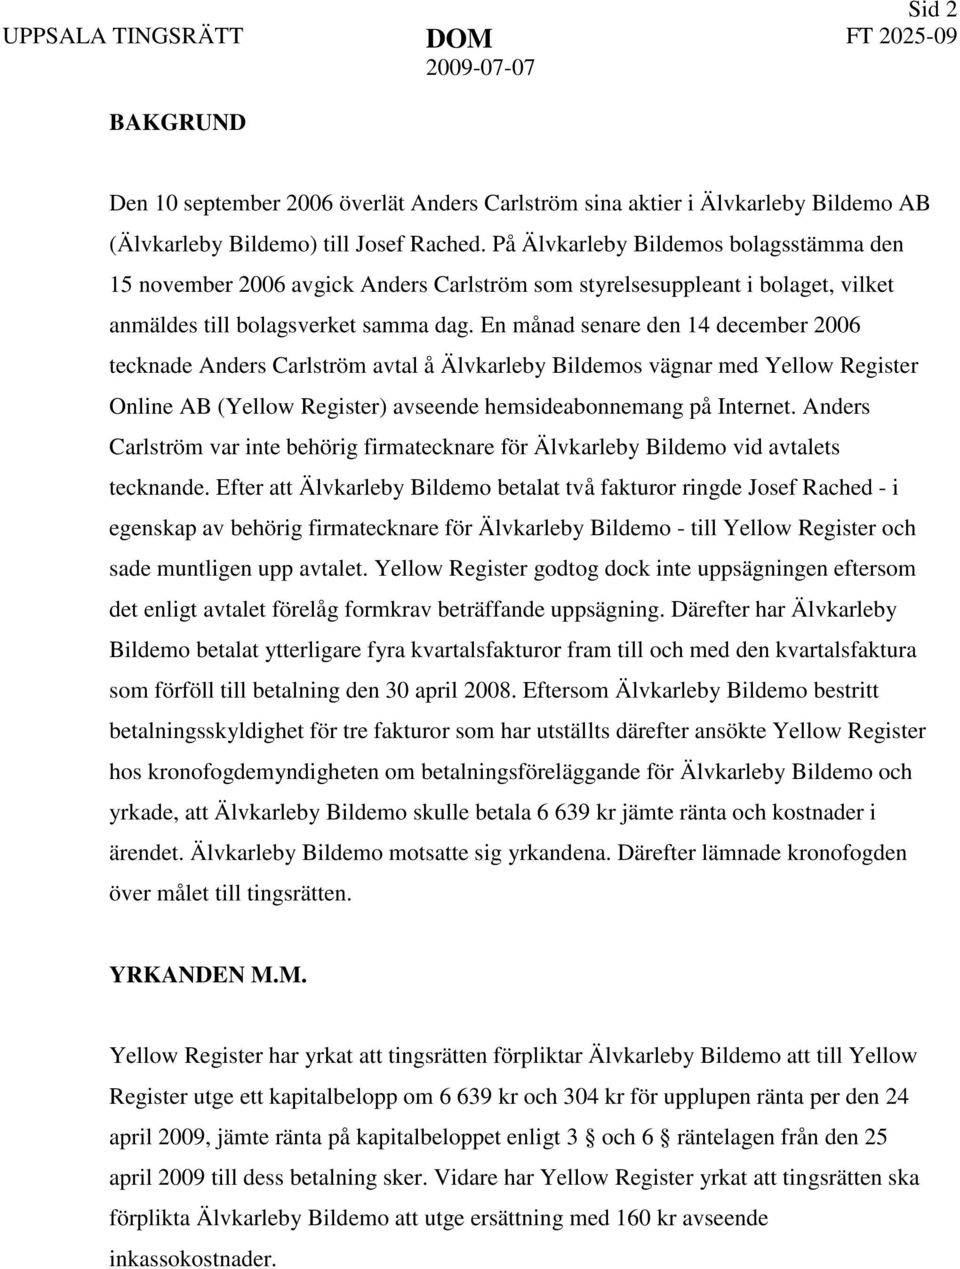 En månad senare den 14 december 2006 tecknade Anders Carlström avtal å Älvkarleby Bildemos vägnar med Yellow Register Online AB (Yellow Register) avseende hemsideabonnemang på Internet.